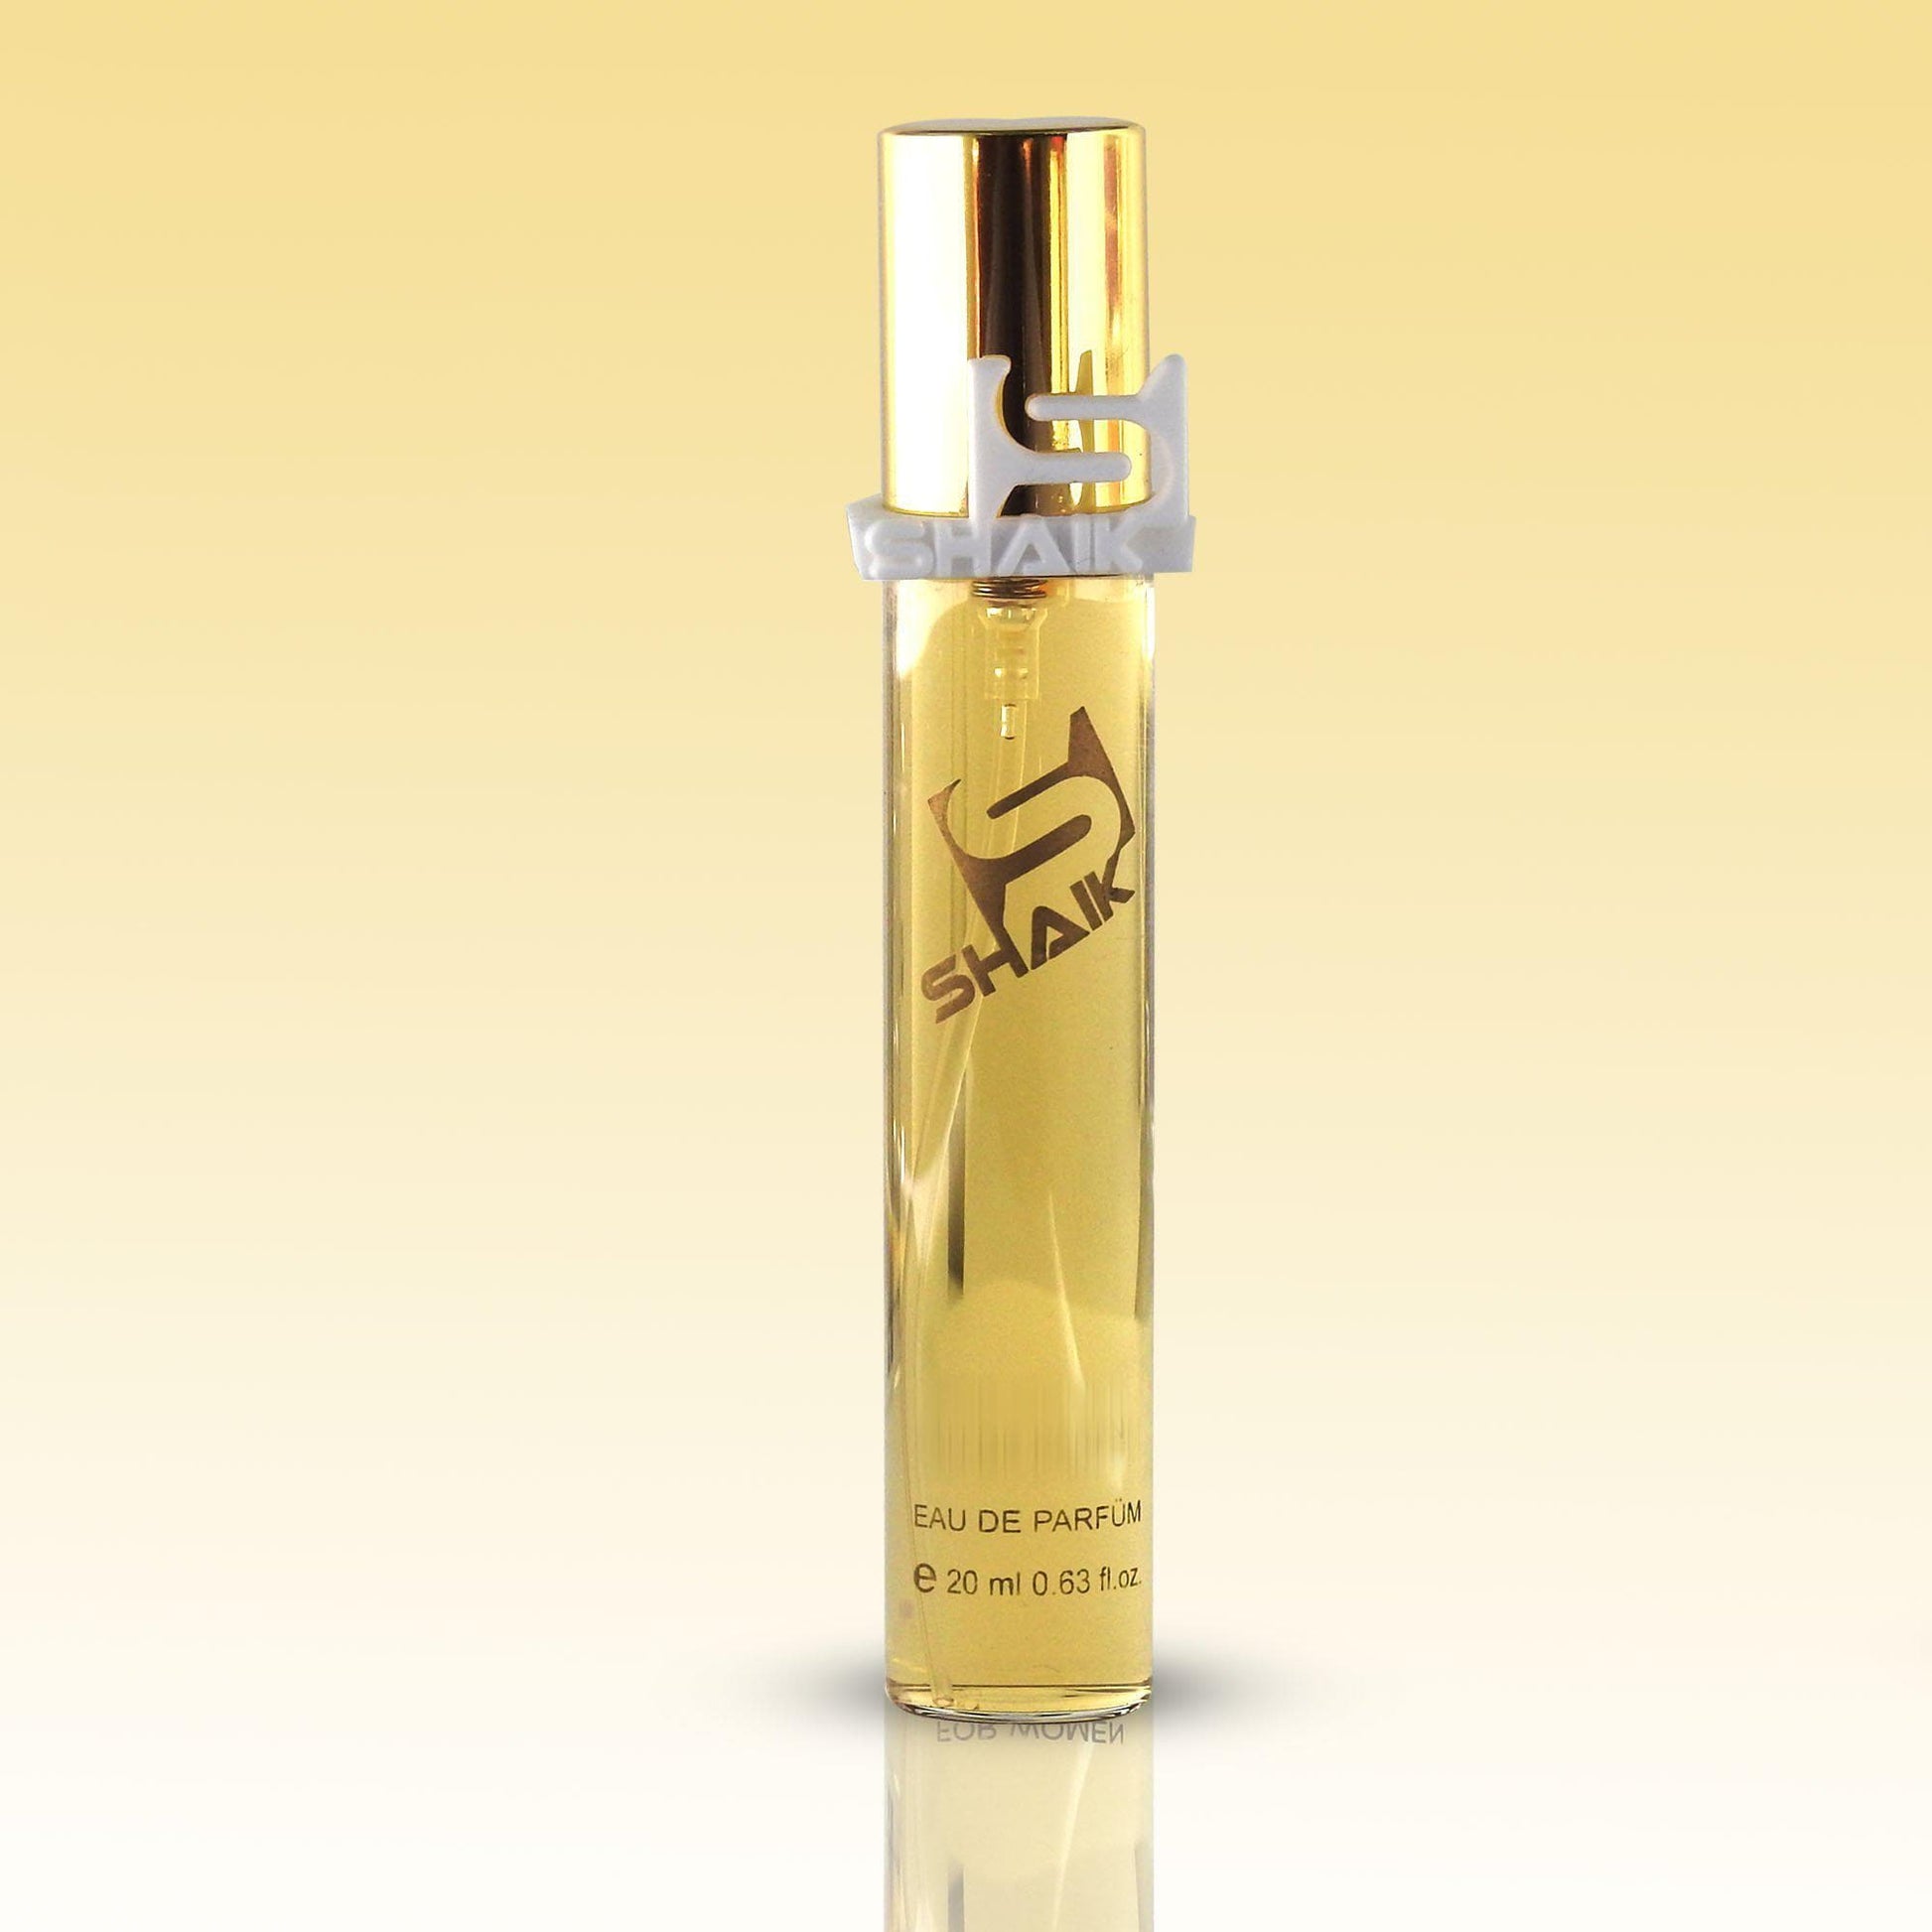 Shaik - 21 - Rosemary, Galbanum, Amber - Shaik Perfume